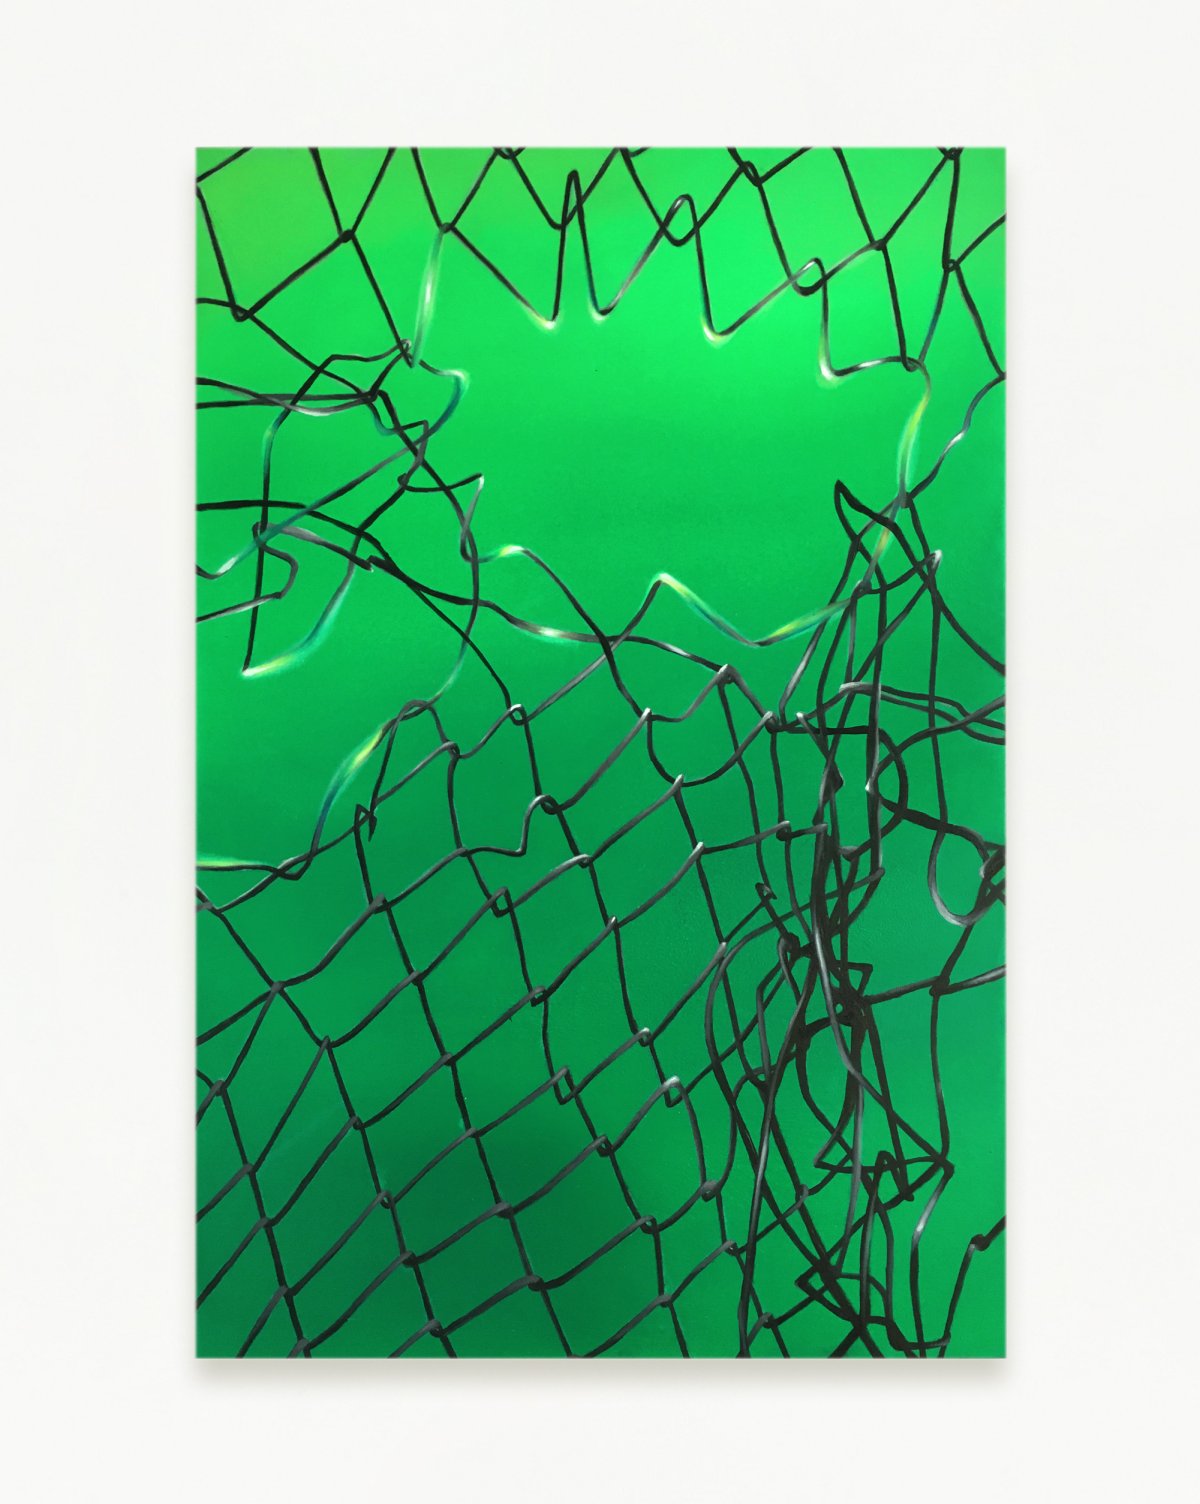 Franklin Collao, Quantum Jump (green), 2019